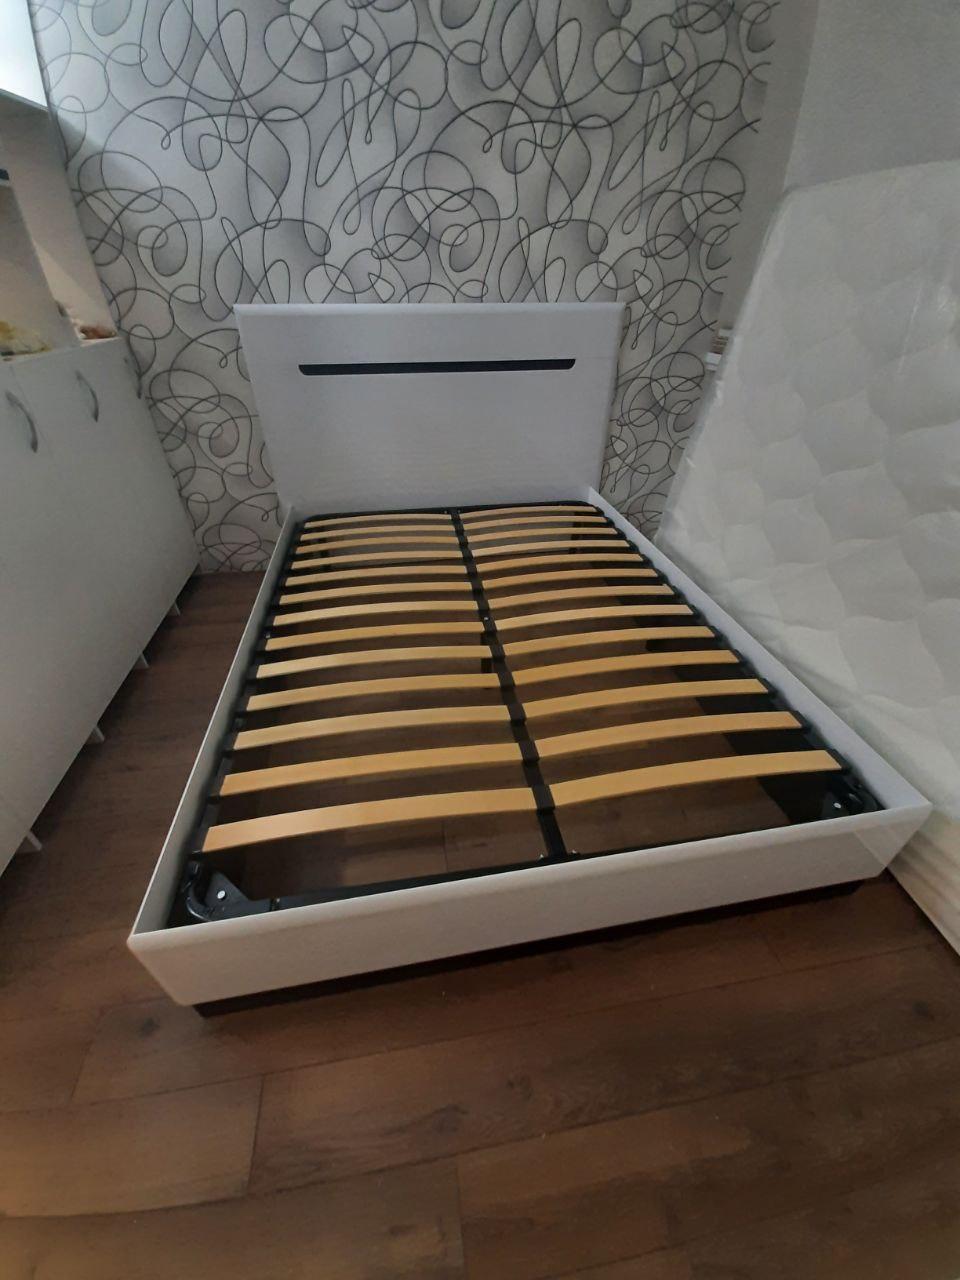 Полутораспальная кровать "Парма" 120 х 190 с подъемным механизмом цвет белый / сонома